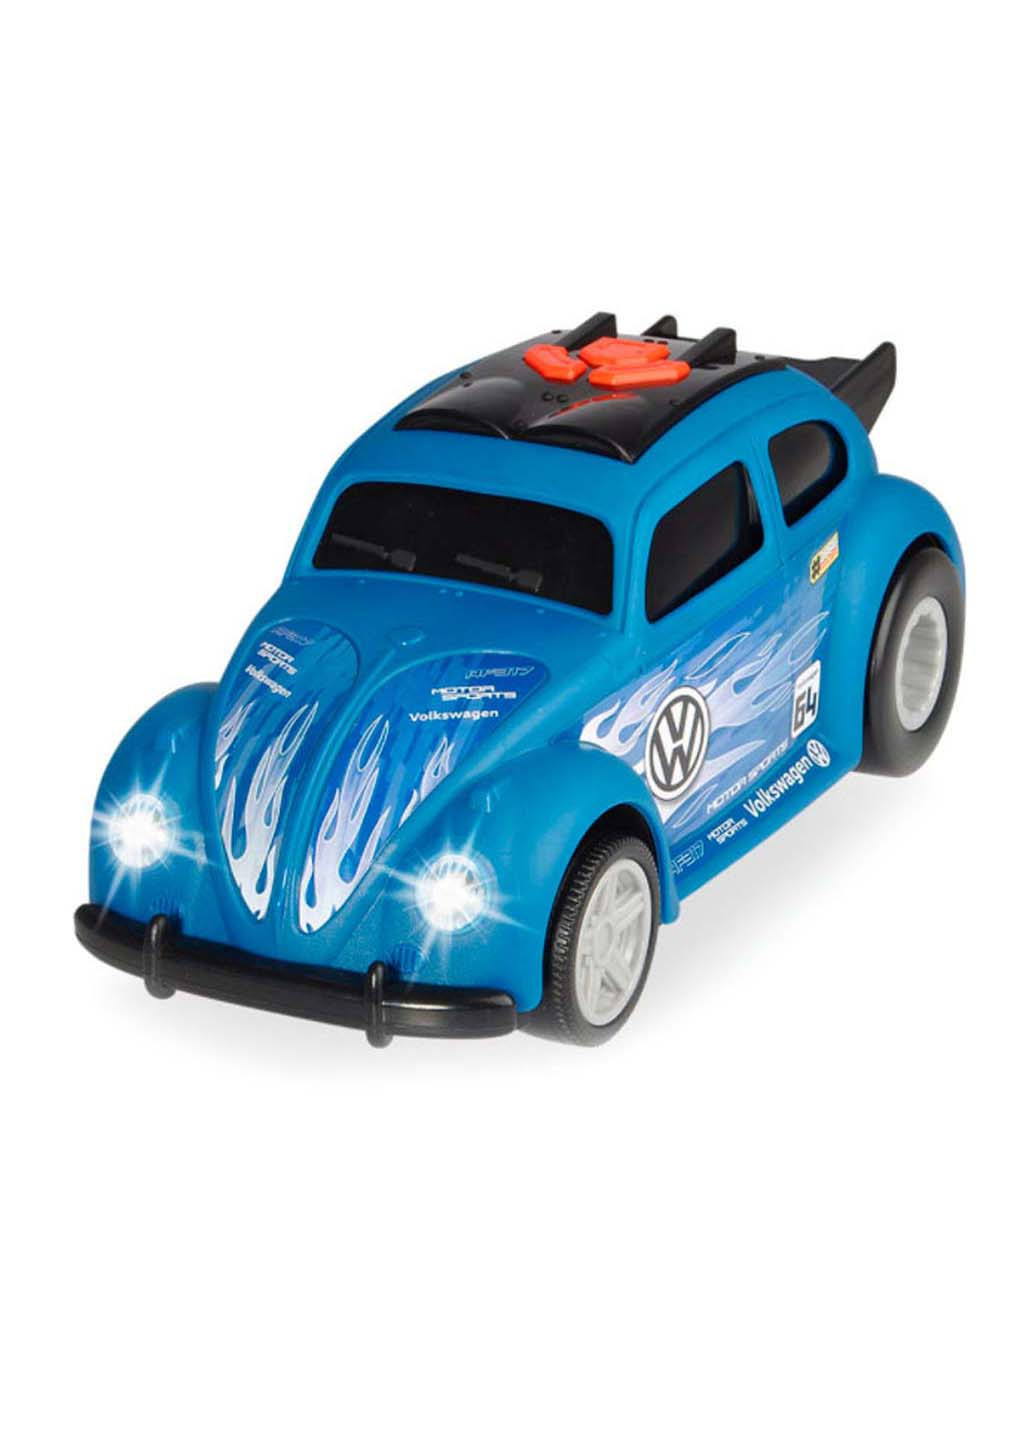 Игрушечная машинка Volkswagen Beatle ездит на задних колесах Dickie toys (258842768)